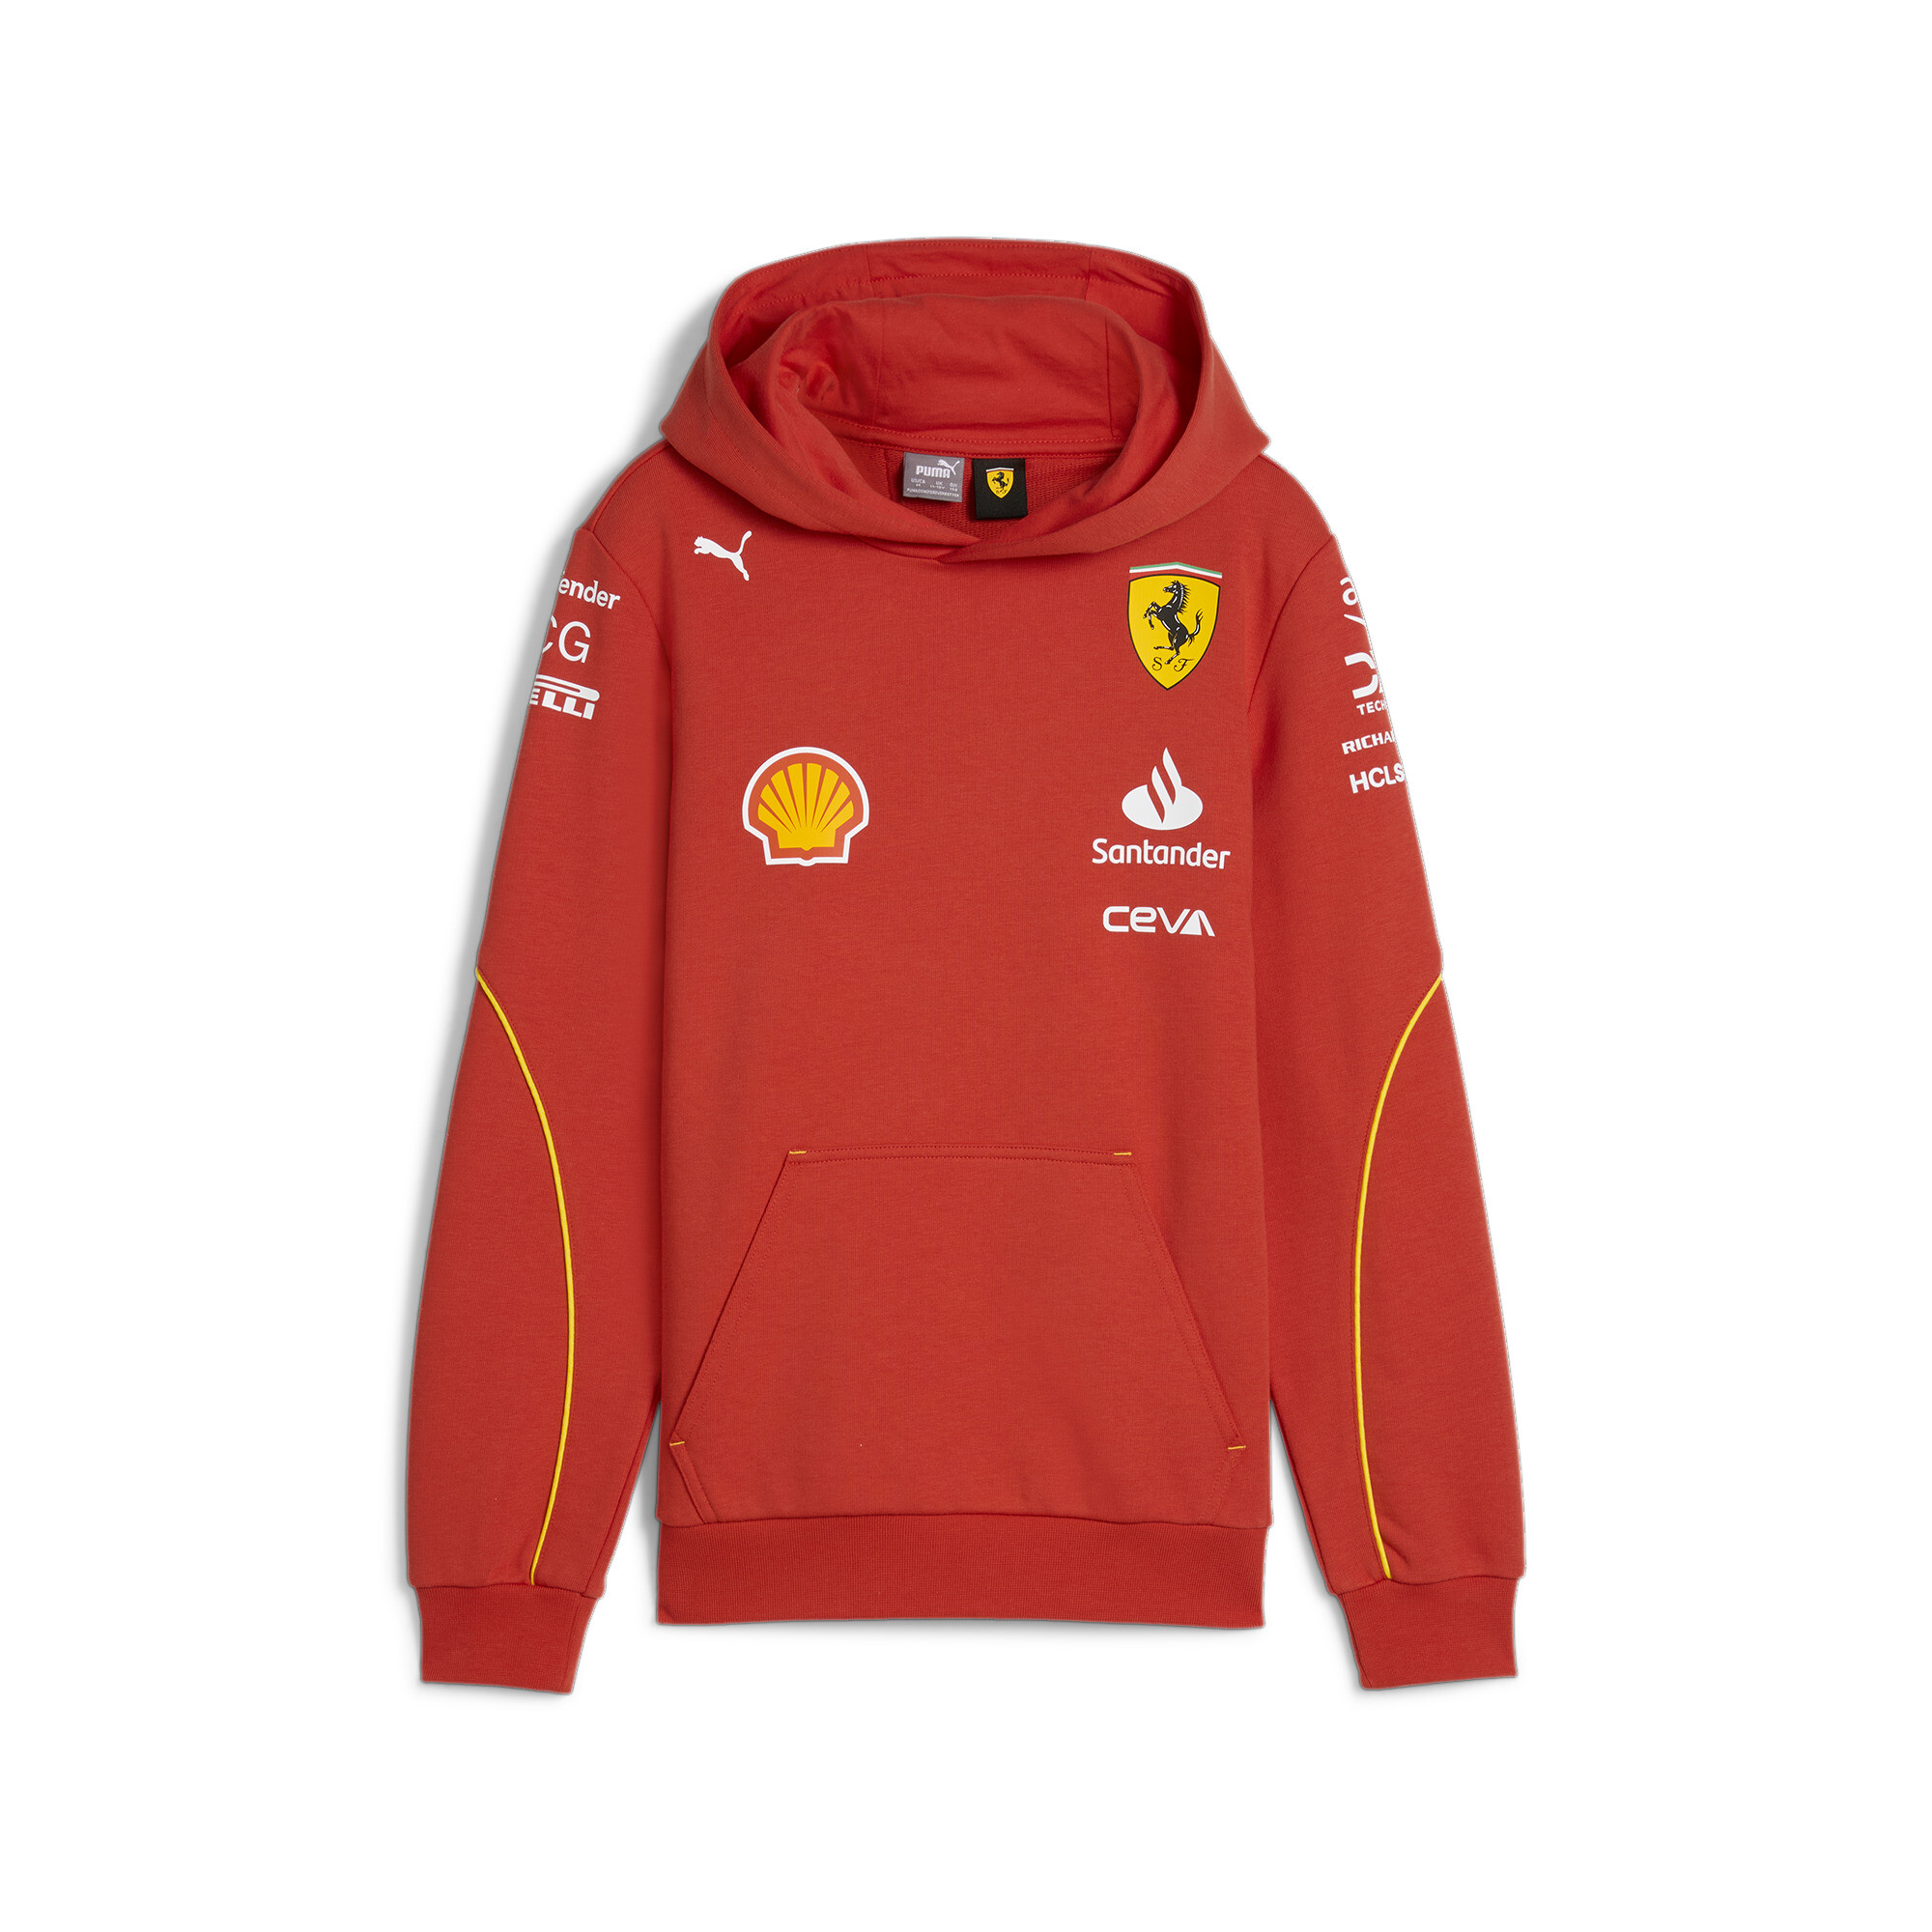 PUMA Scuderia Ferrari: Tênis, Camisas, Bonés, Jaquetas